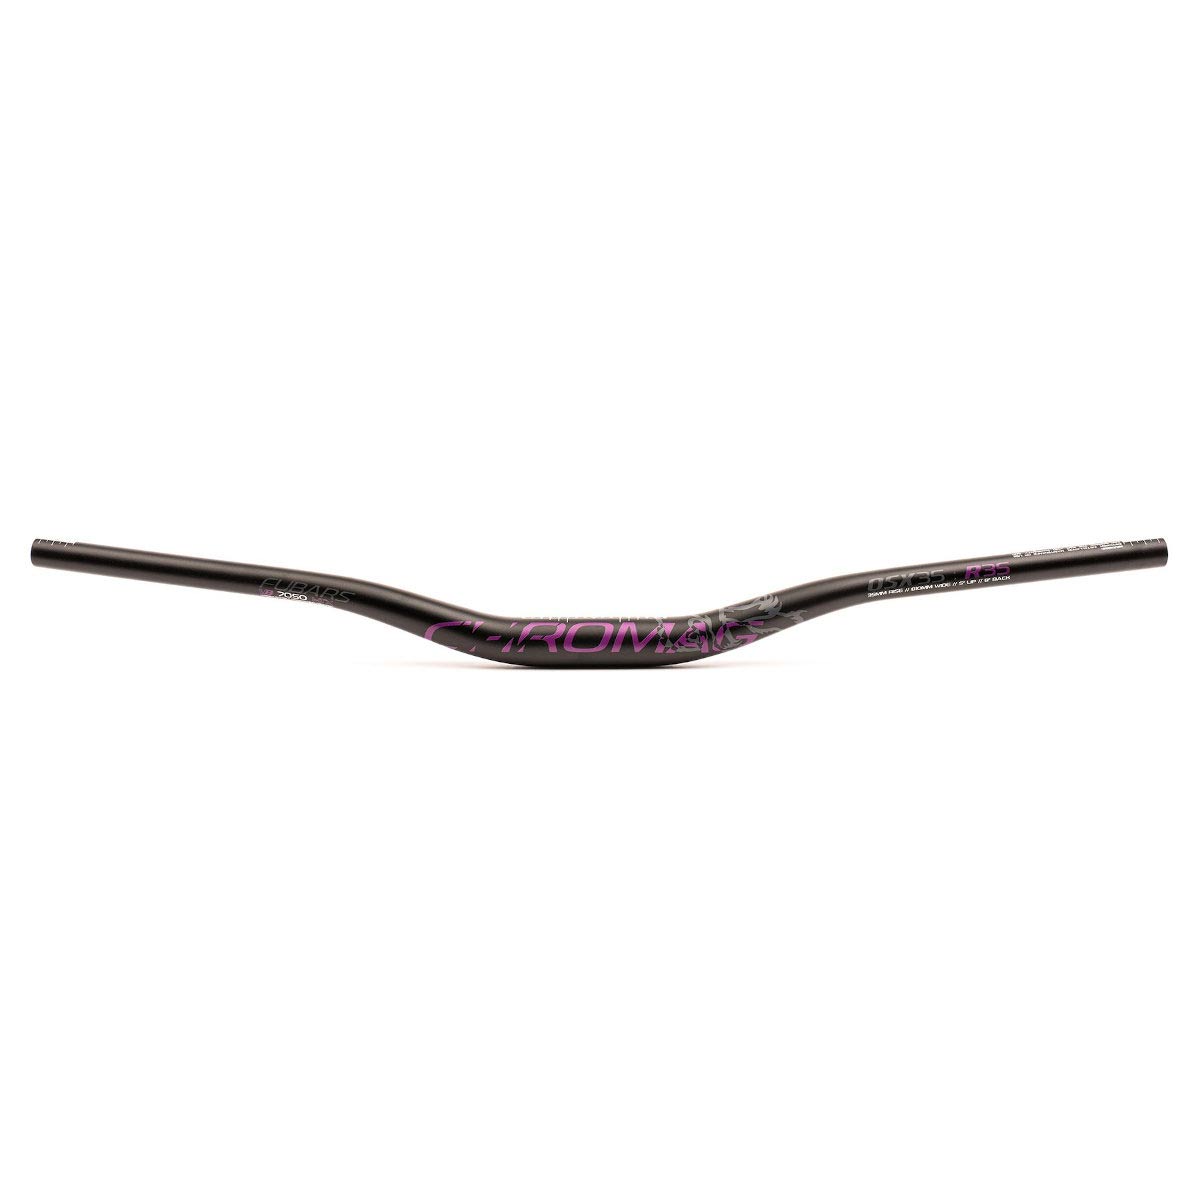 Produktbild von CHROMAG Fubars OSX 35 Low Riser MTB-Lenker 25mm Rise - schwarz / violett